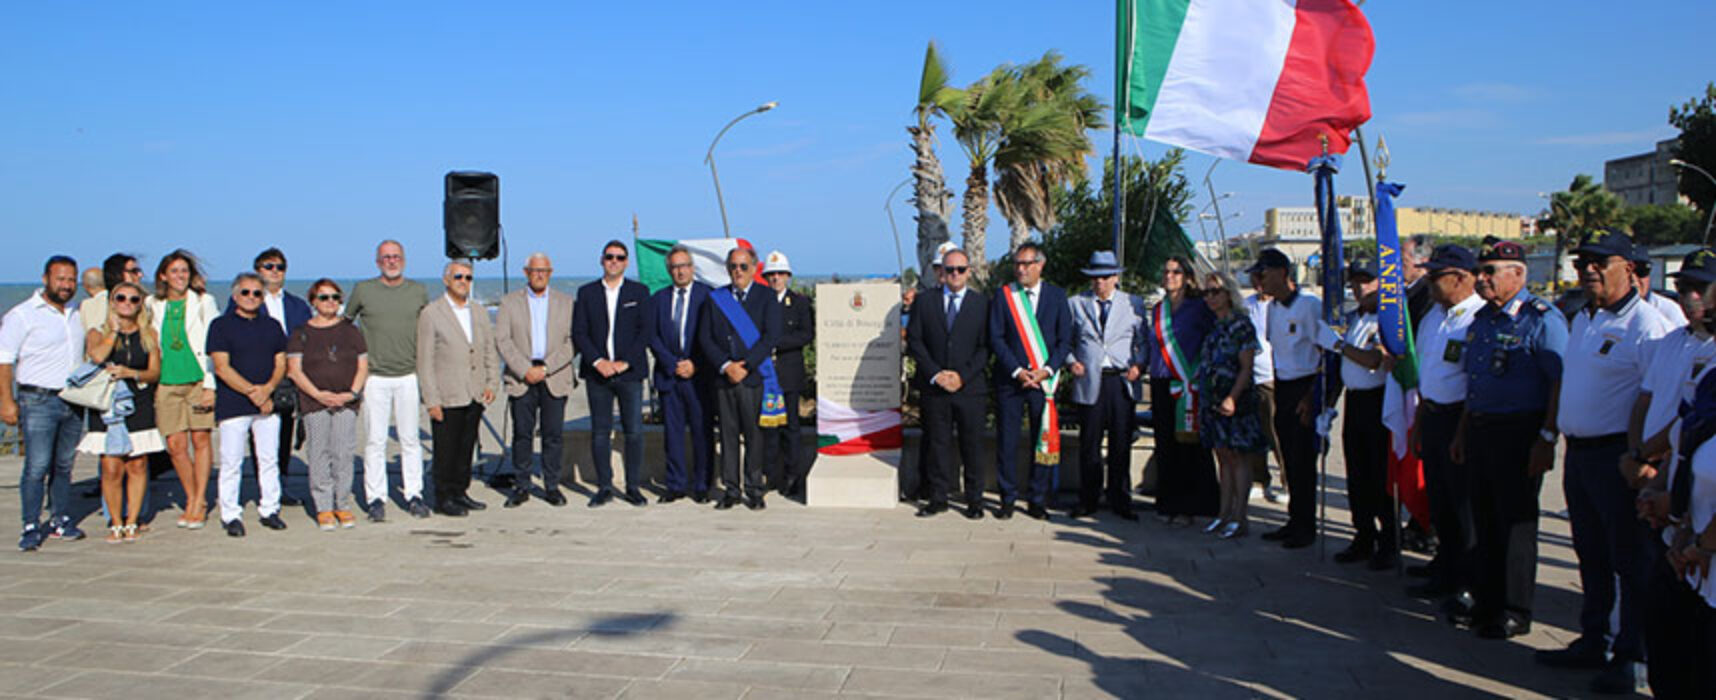 Tragedia Linate, inaugurata nuova stele commemorativa a conca dei Monaci